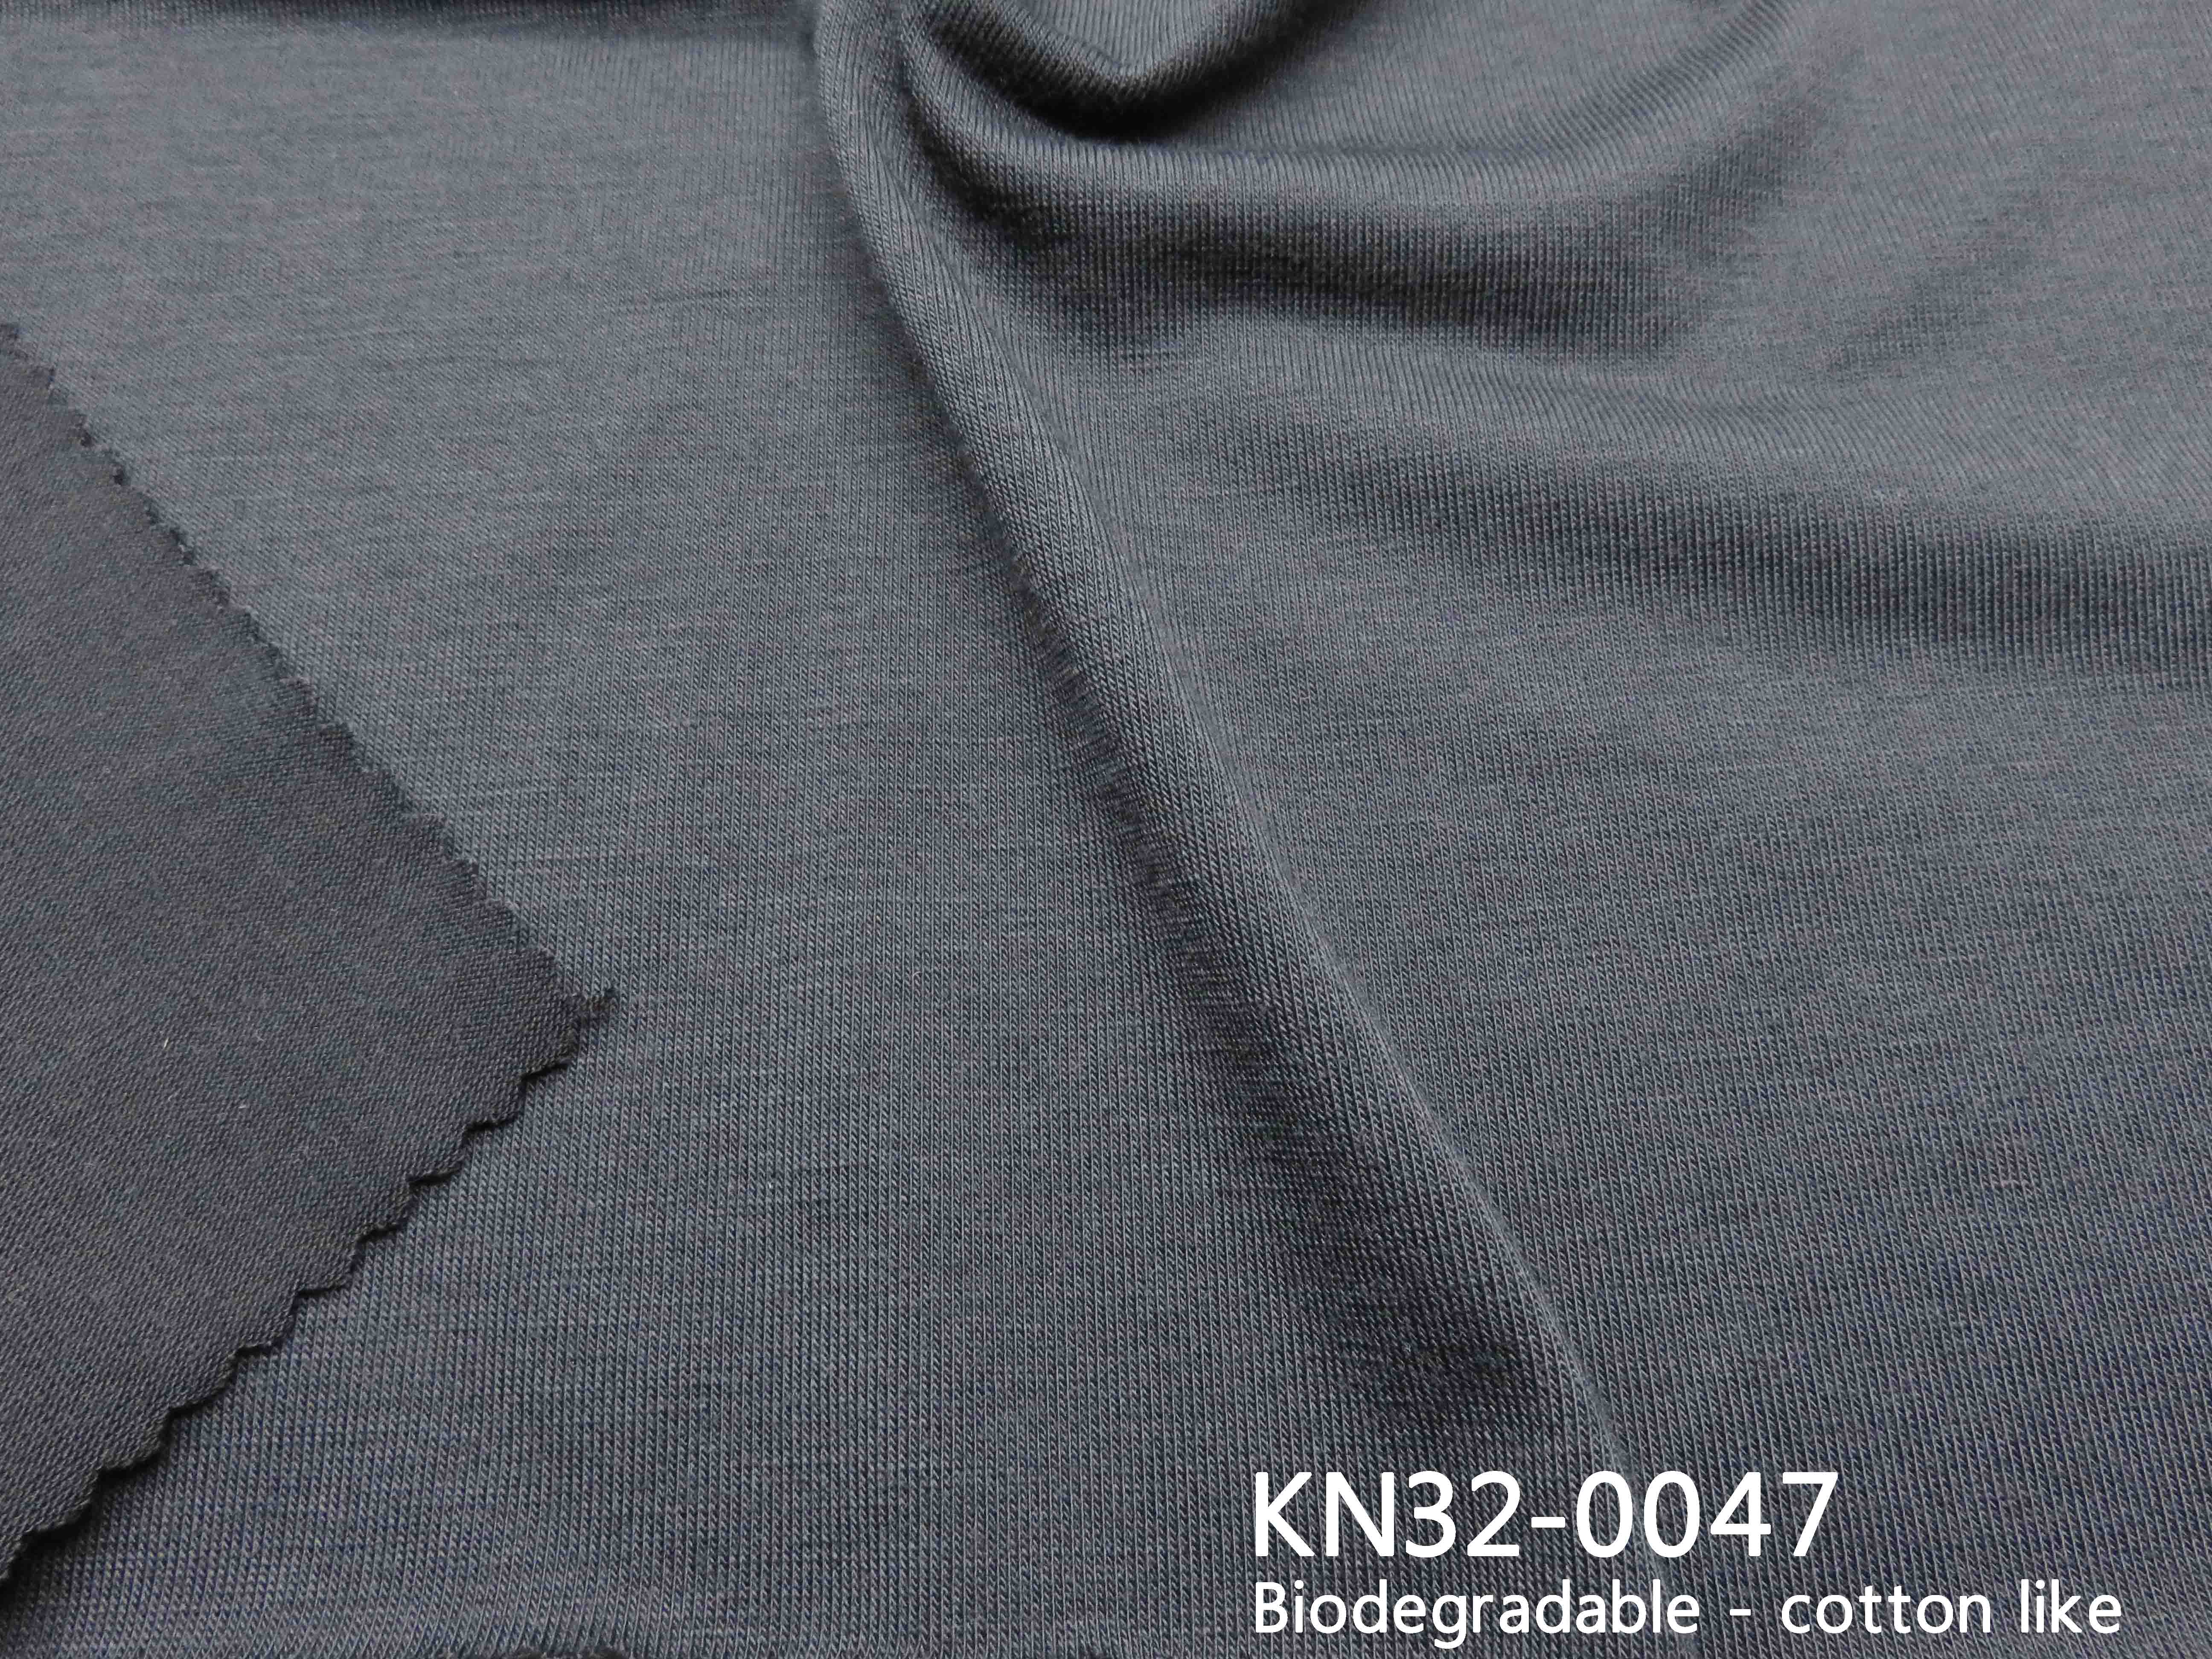 KN32-0047